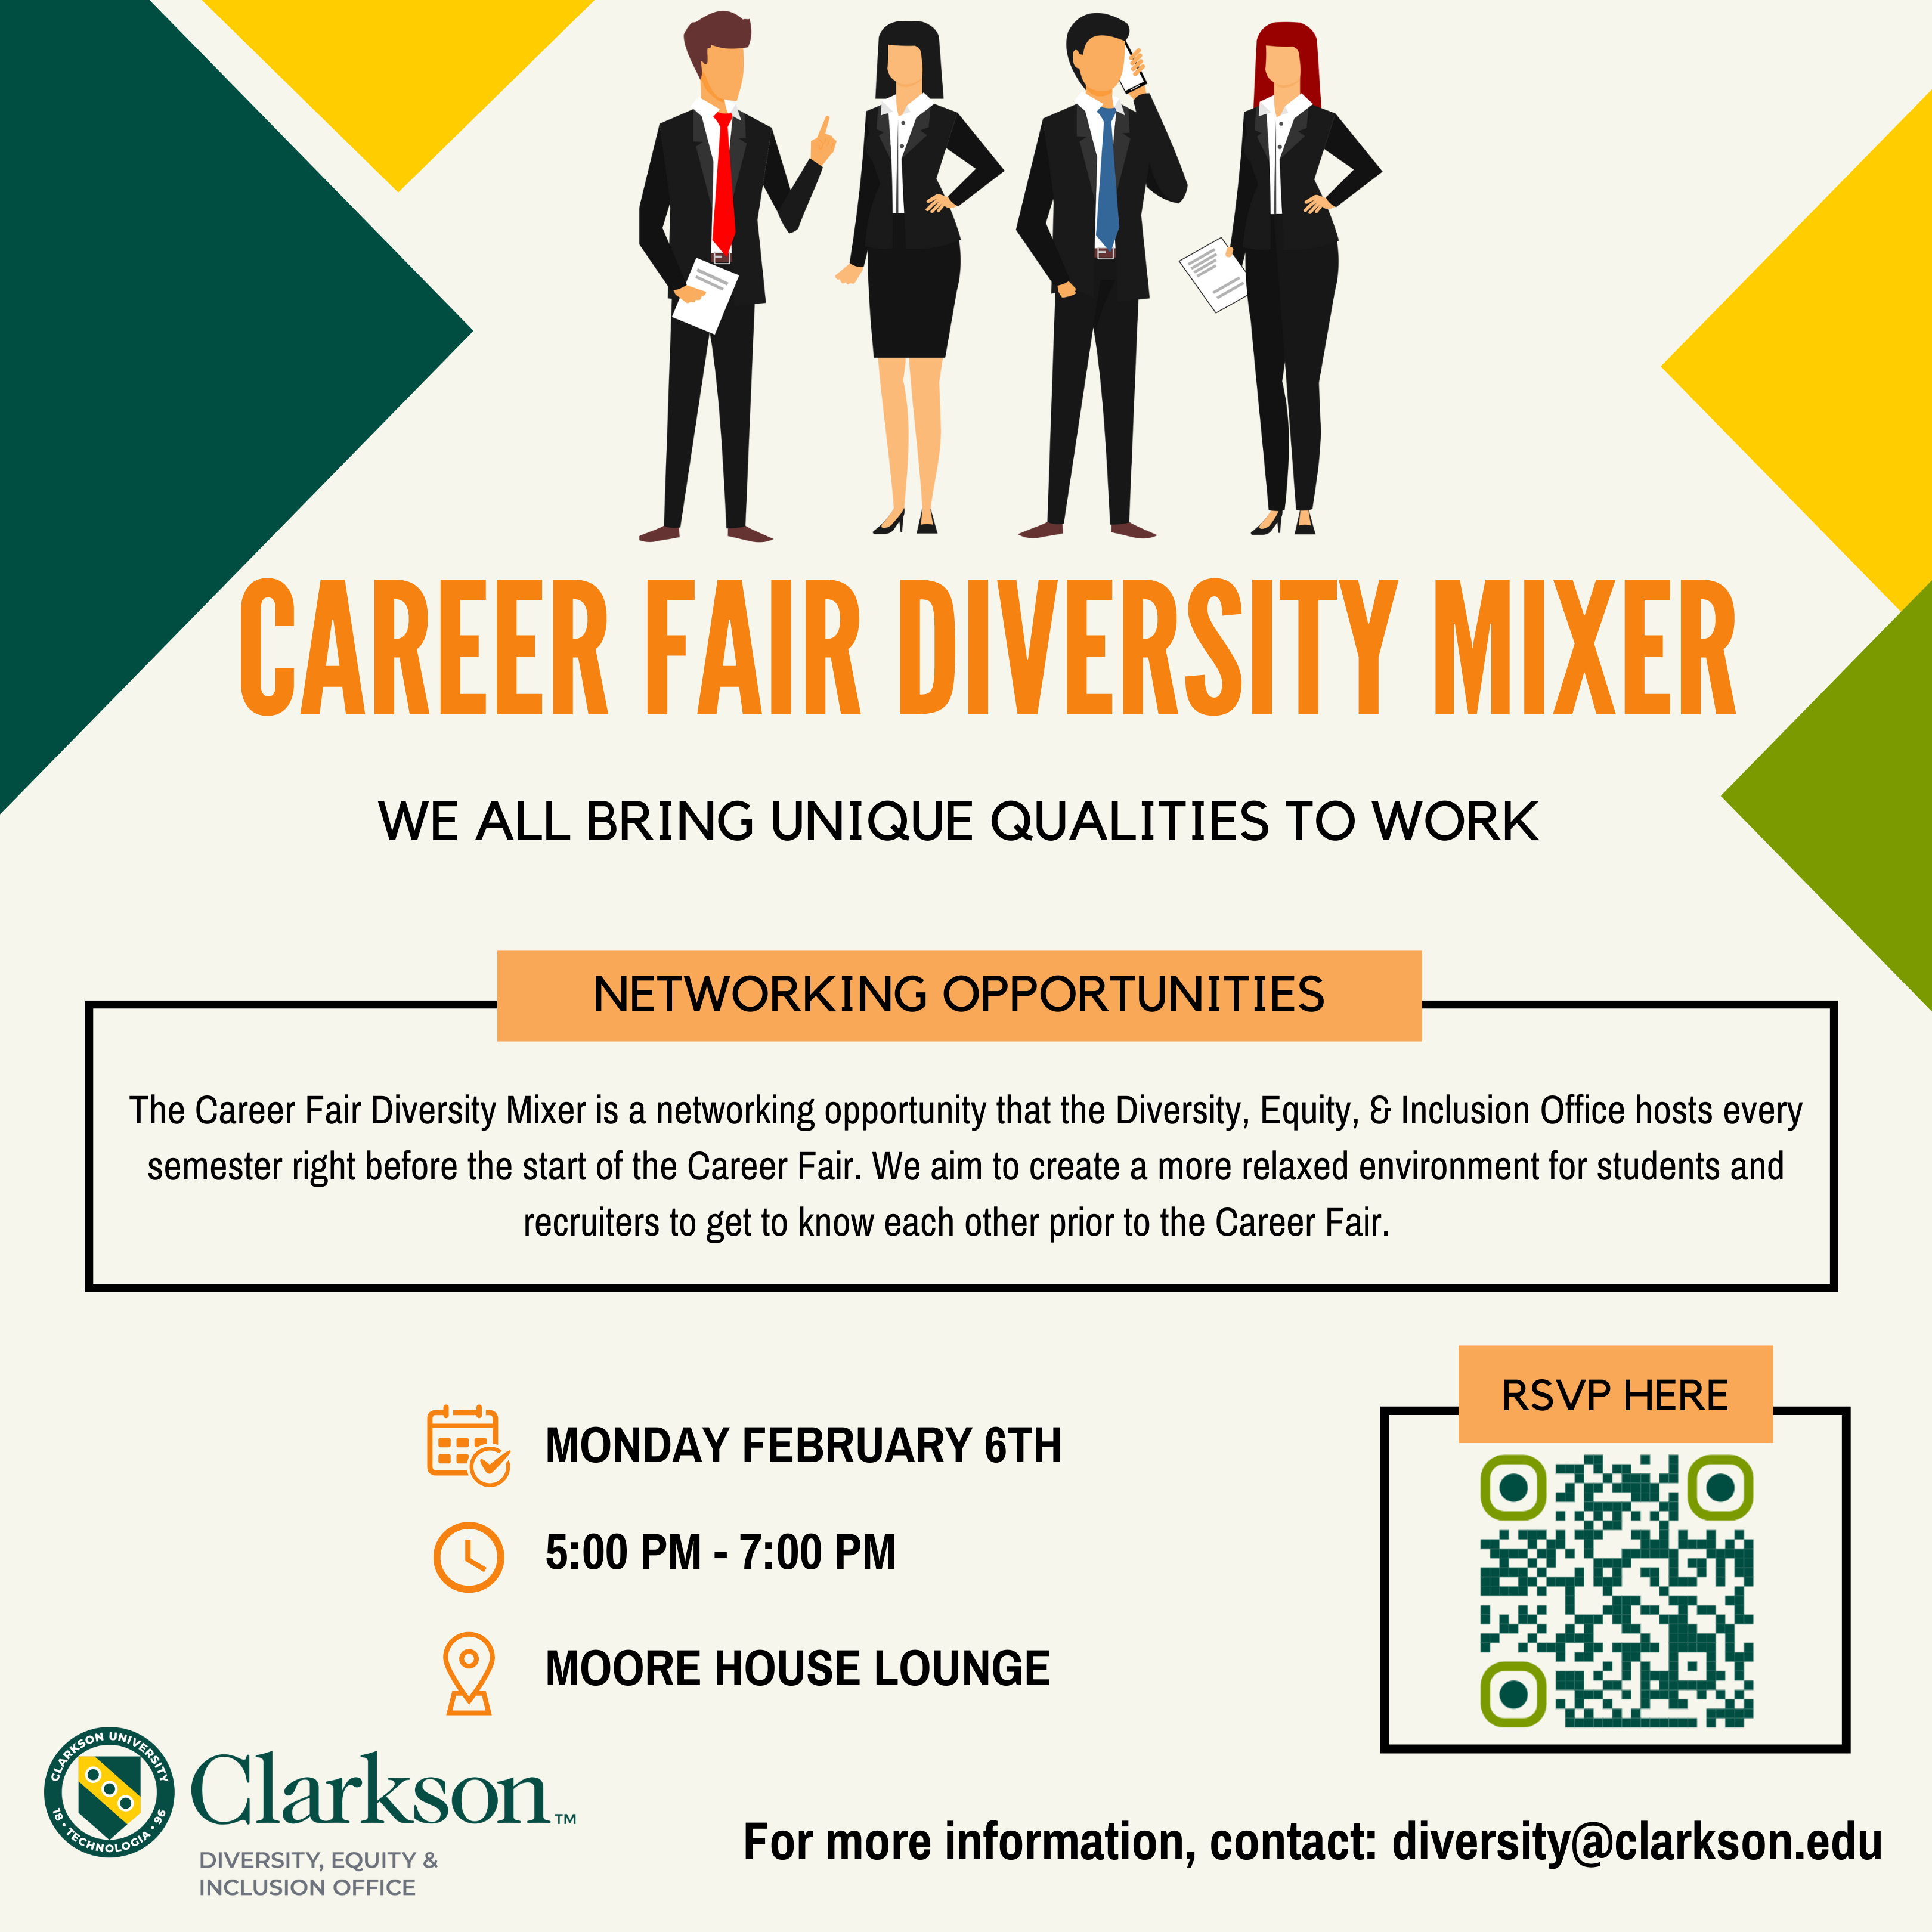 Career Fair Diversity Mixer